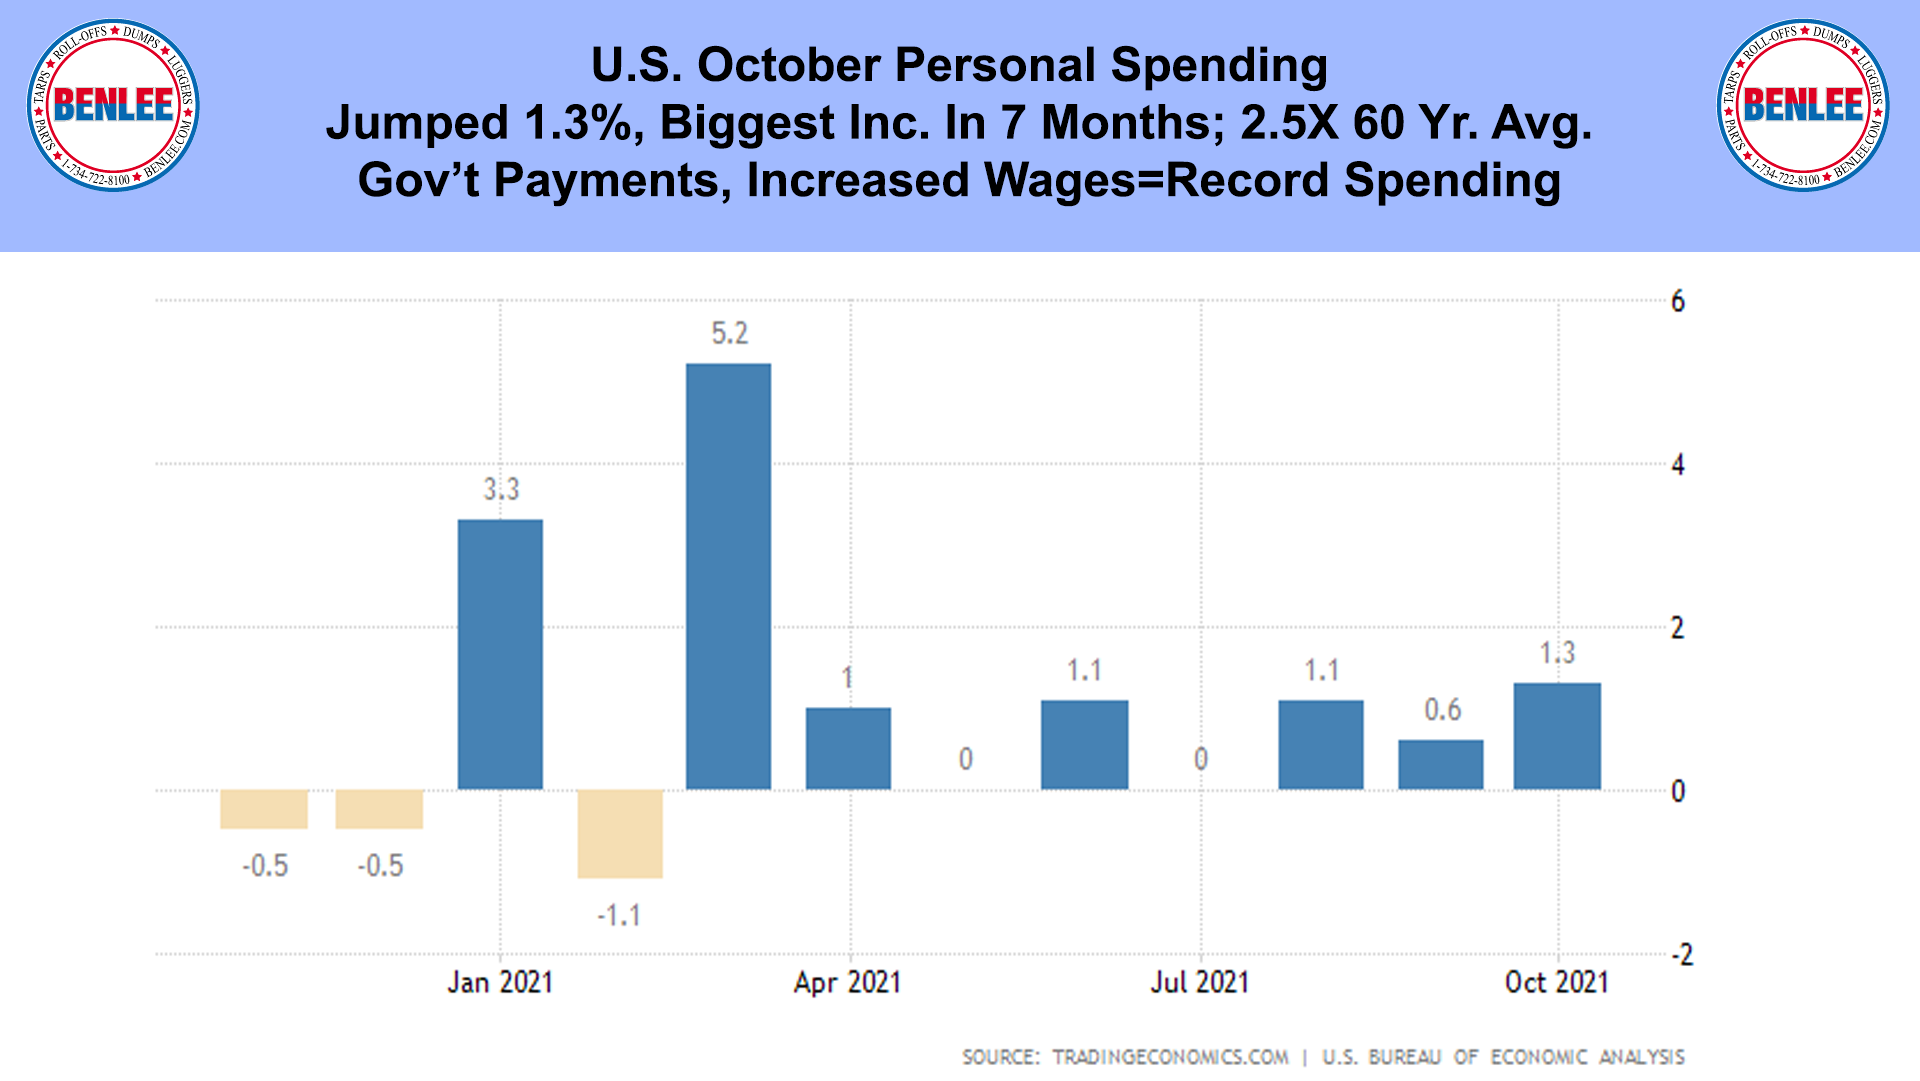 U.S. October Personal Spending